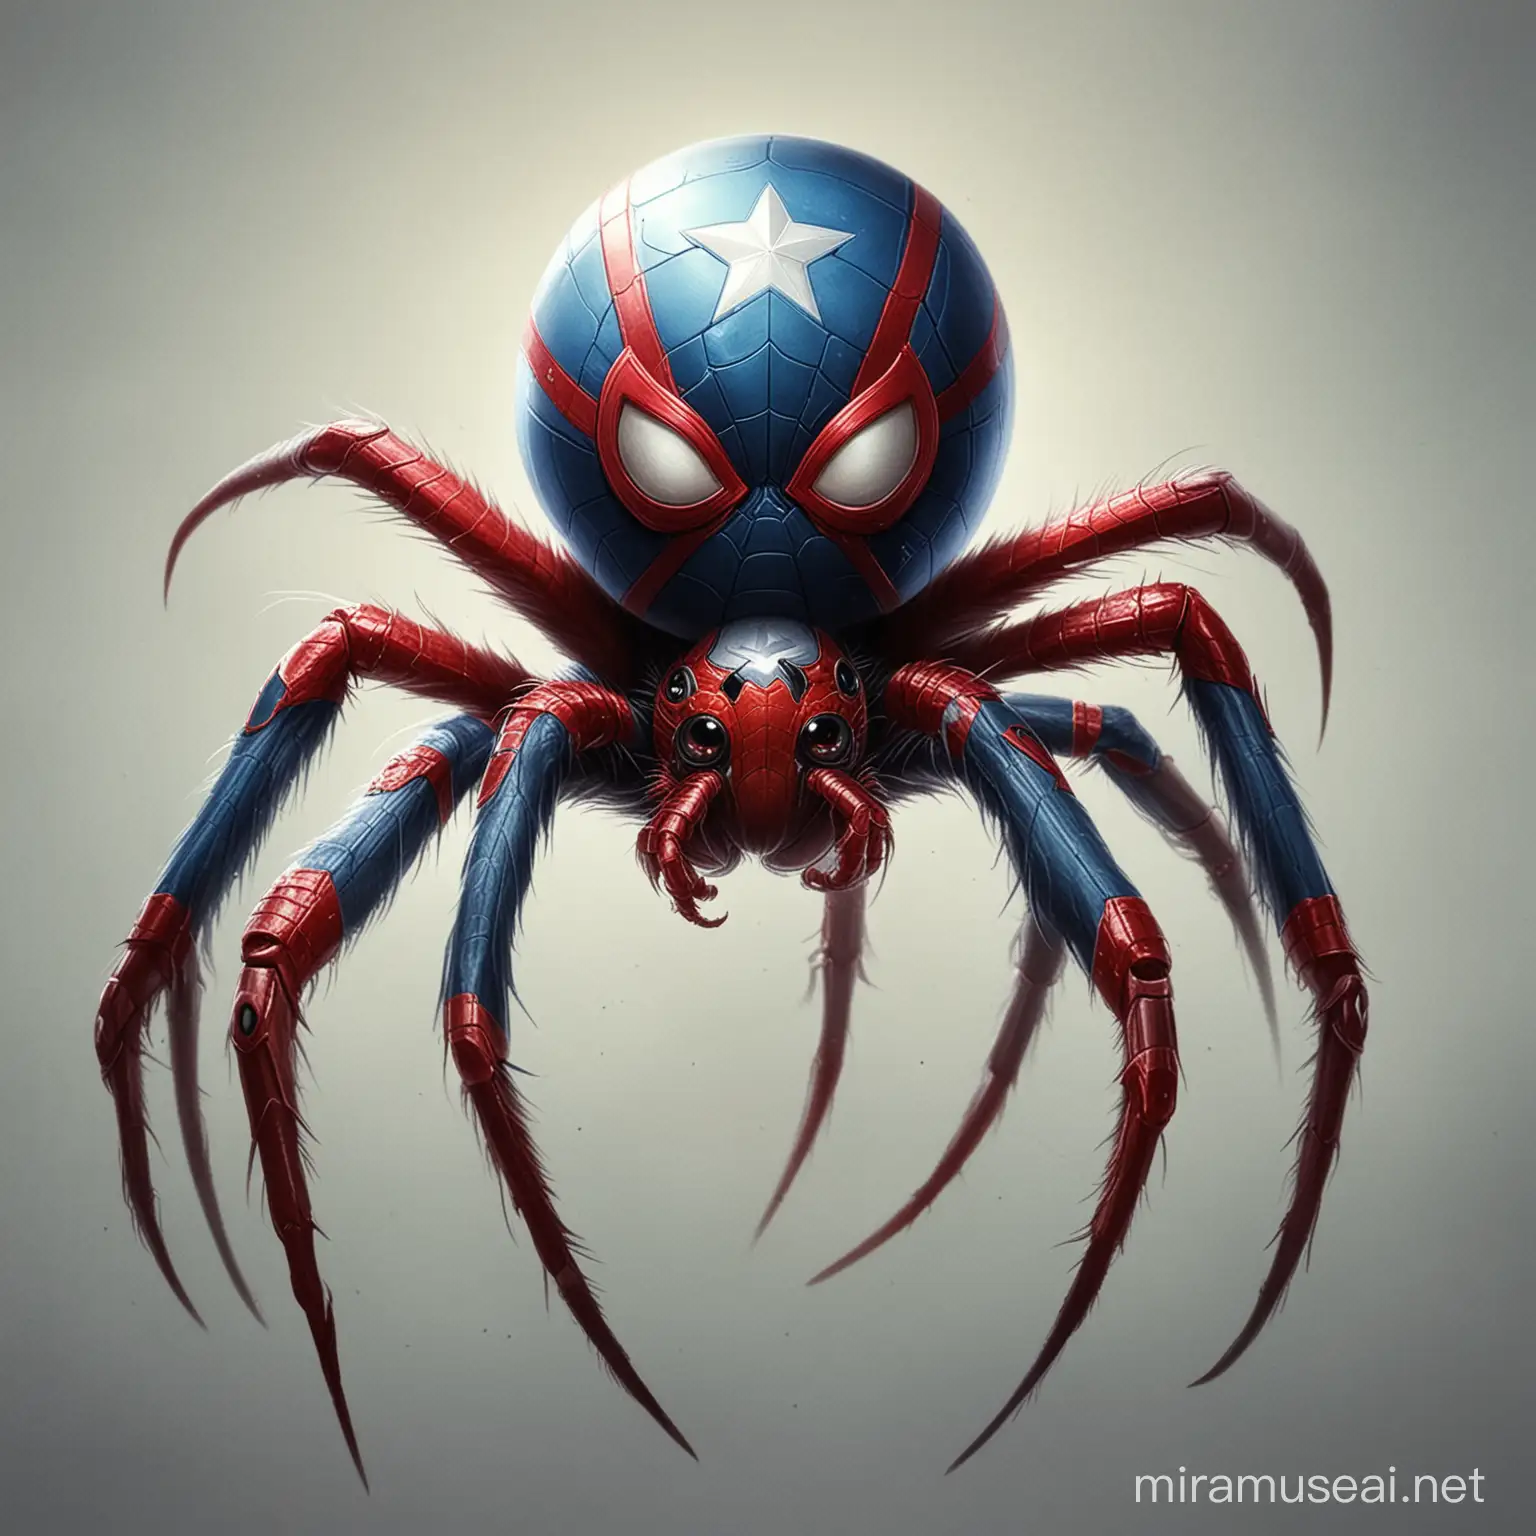 Captain America Spider Animal Courageous Arachnid Hero with Patriotic Spirit